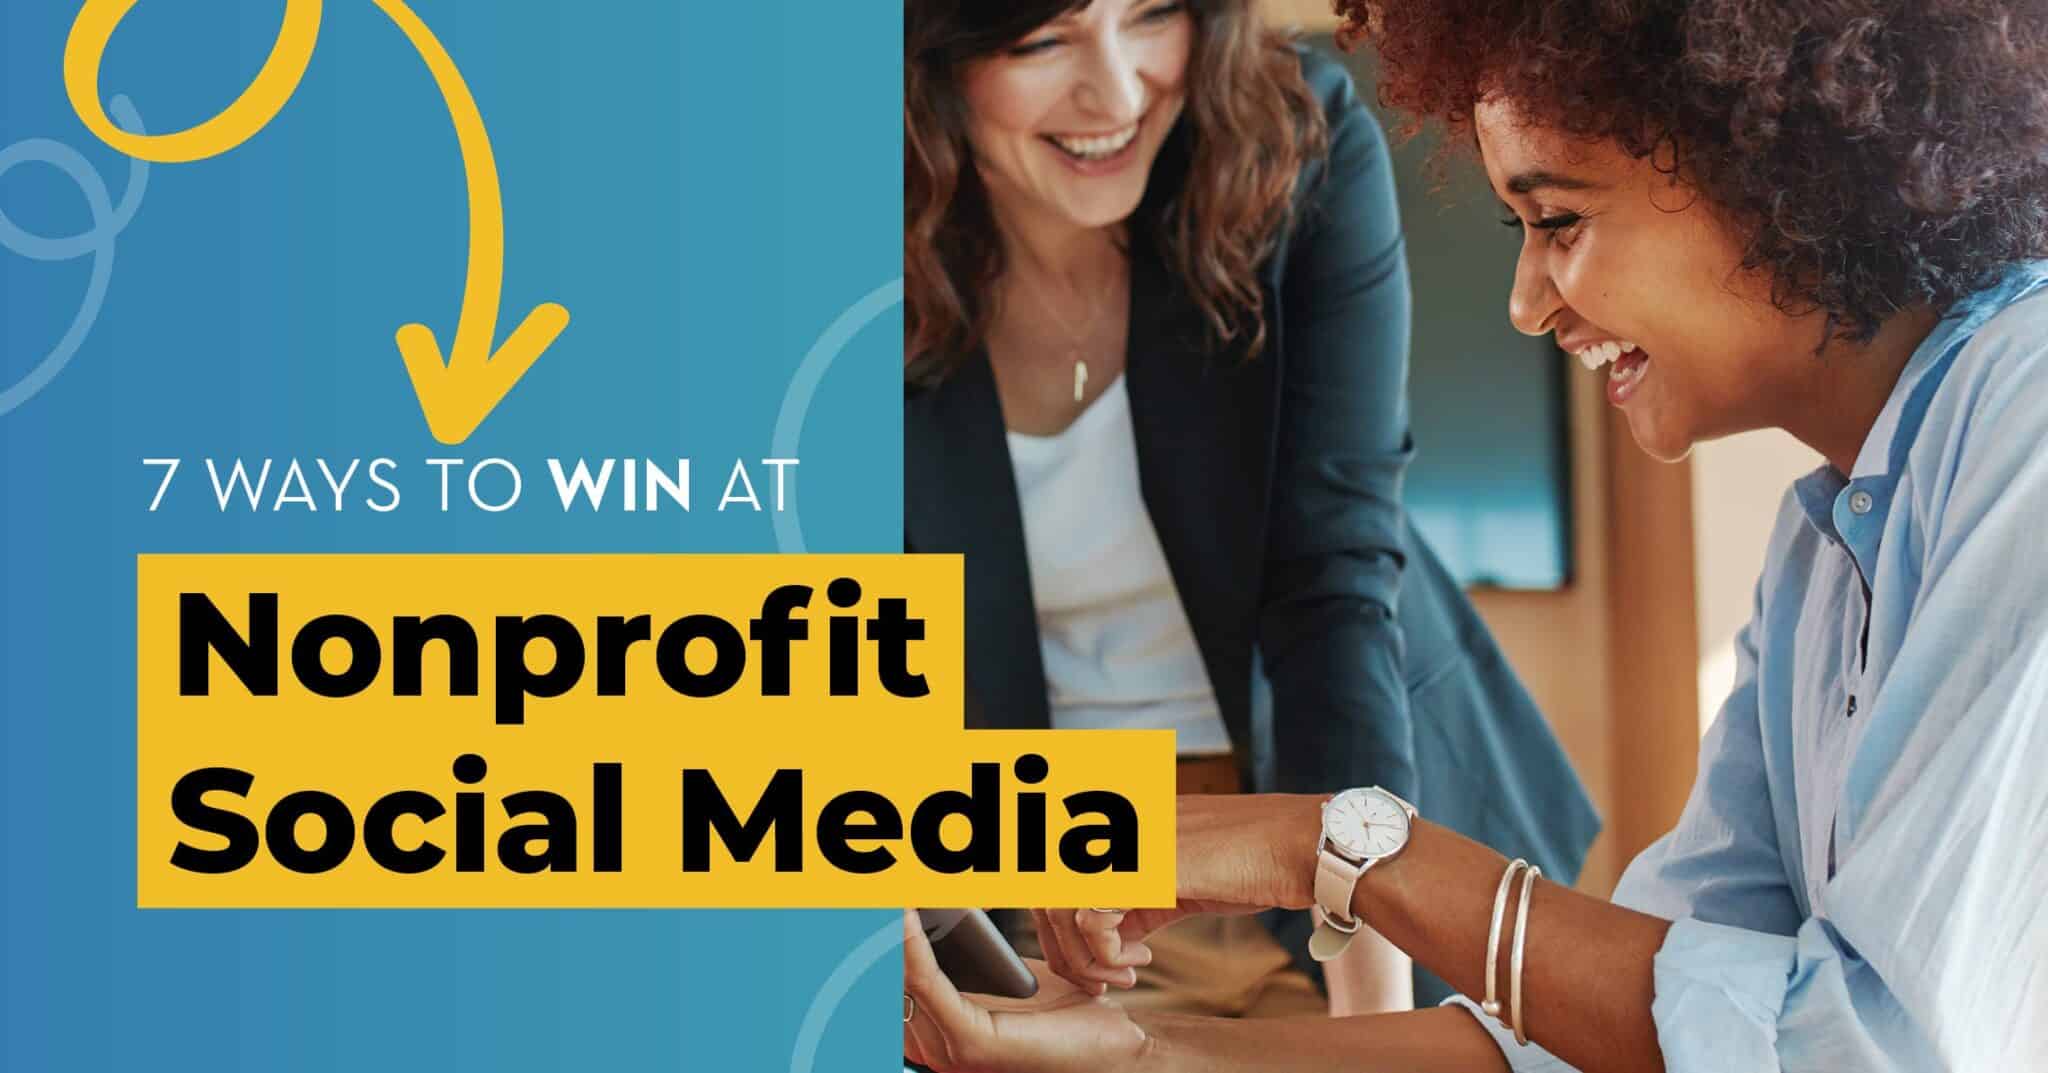 7 Ways to Win at Nonprofit Social Media